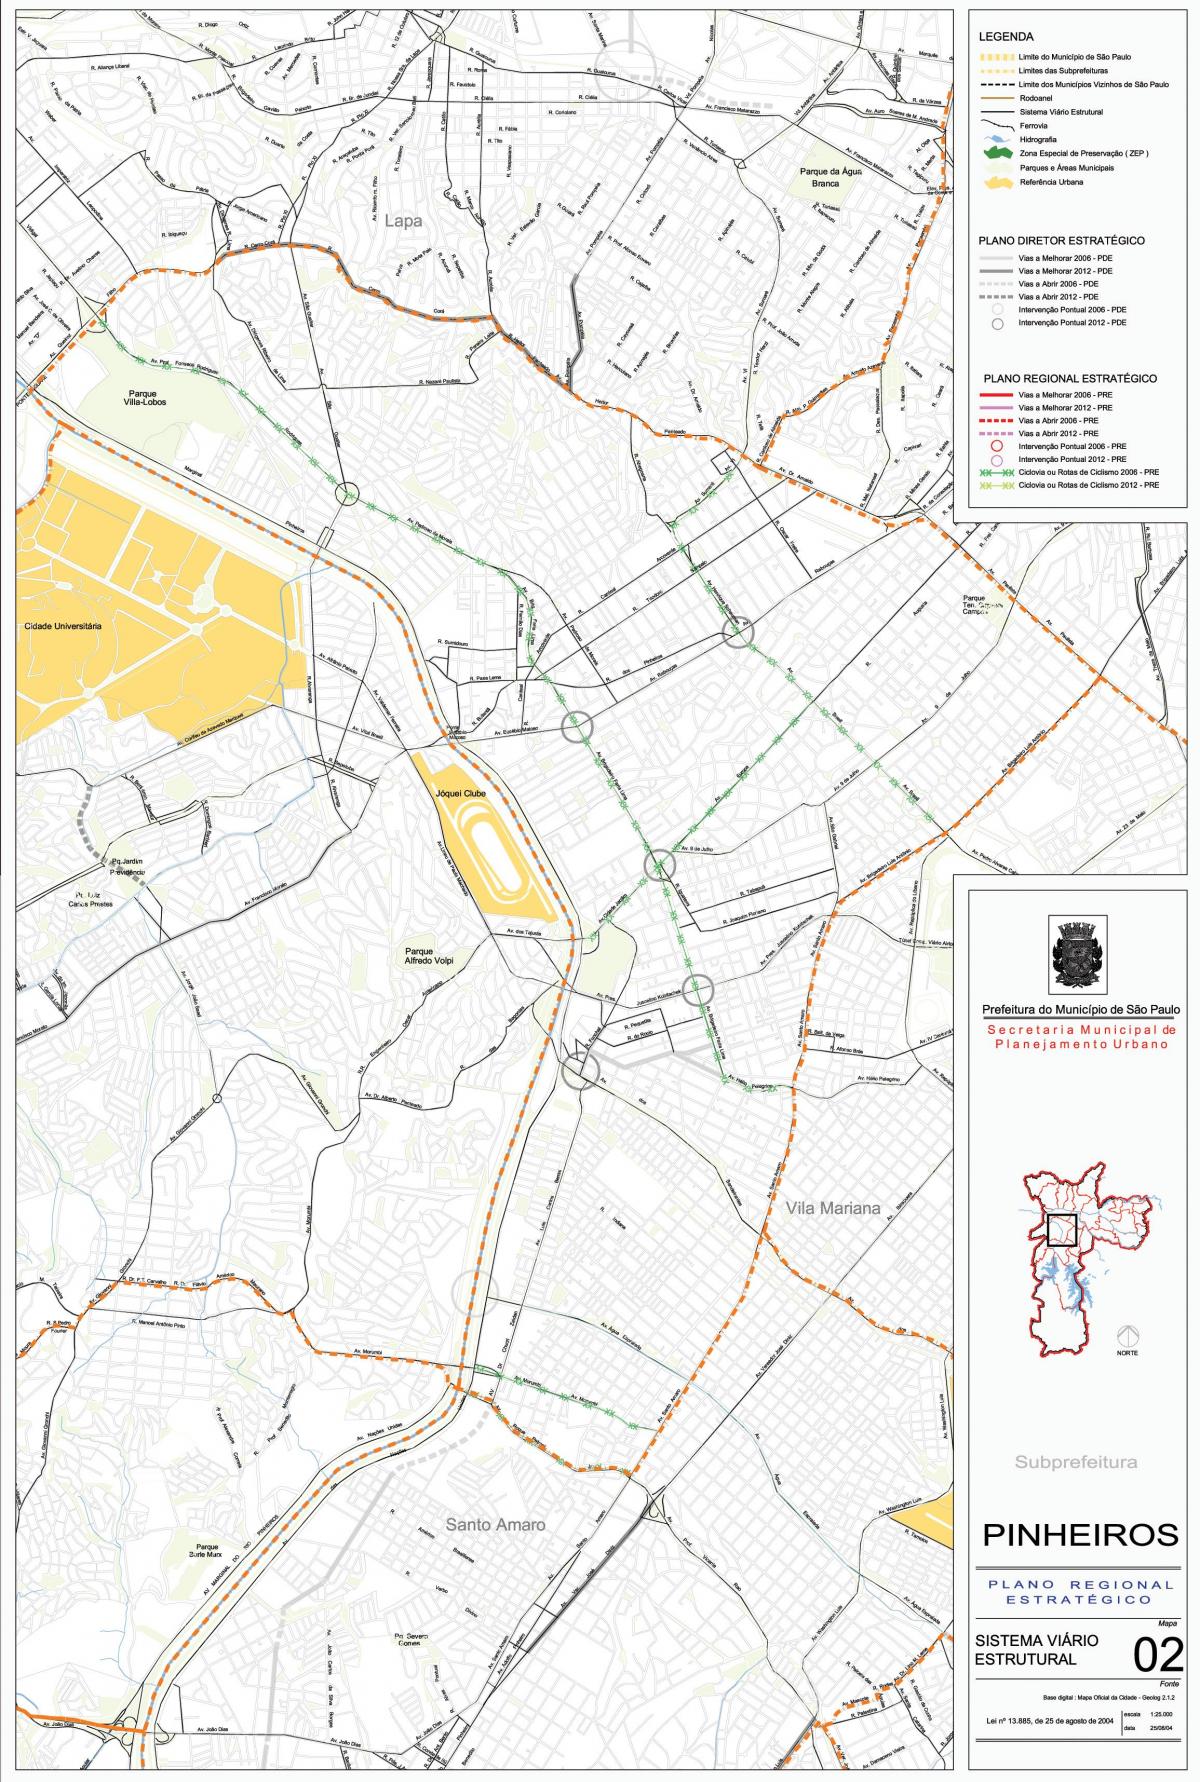 Peta Pinheiros São Paulo - Jalan